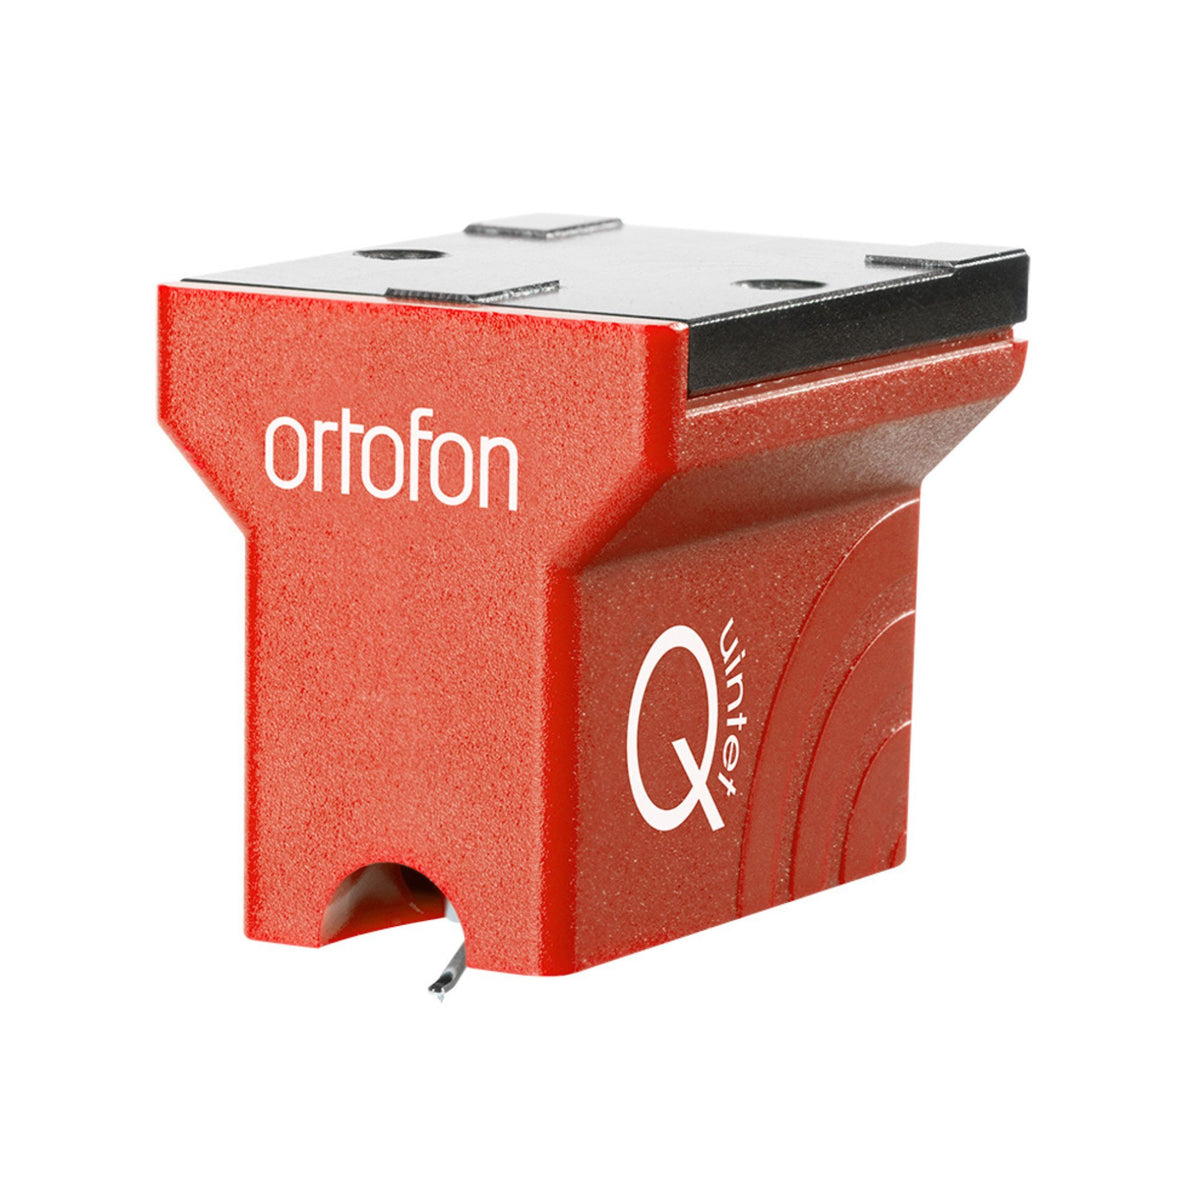 Ortofon MC Quintet Red, Ortofon, Turntable Accessories - AVStore.in